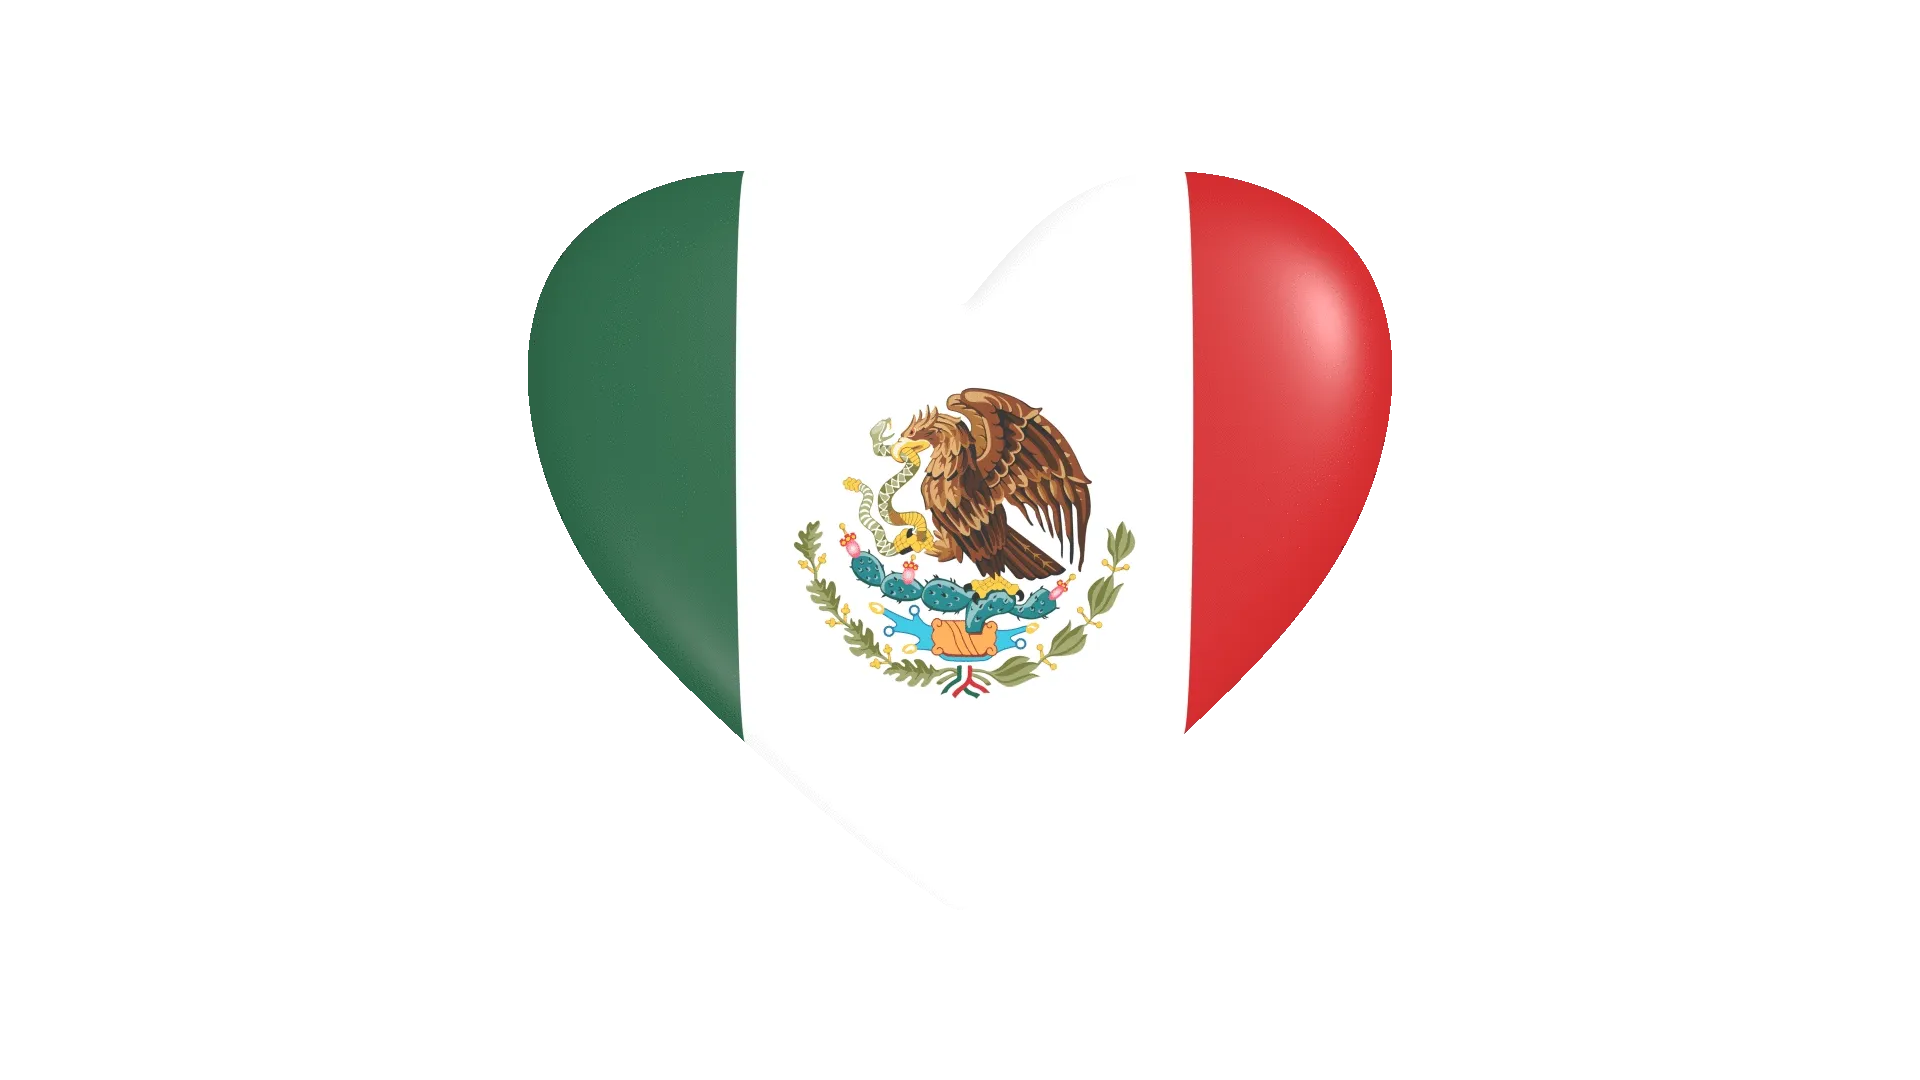 Mexico heart